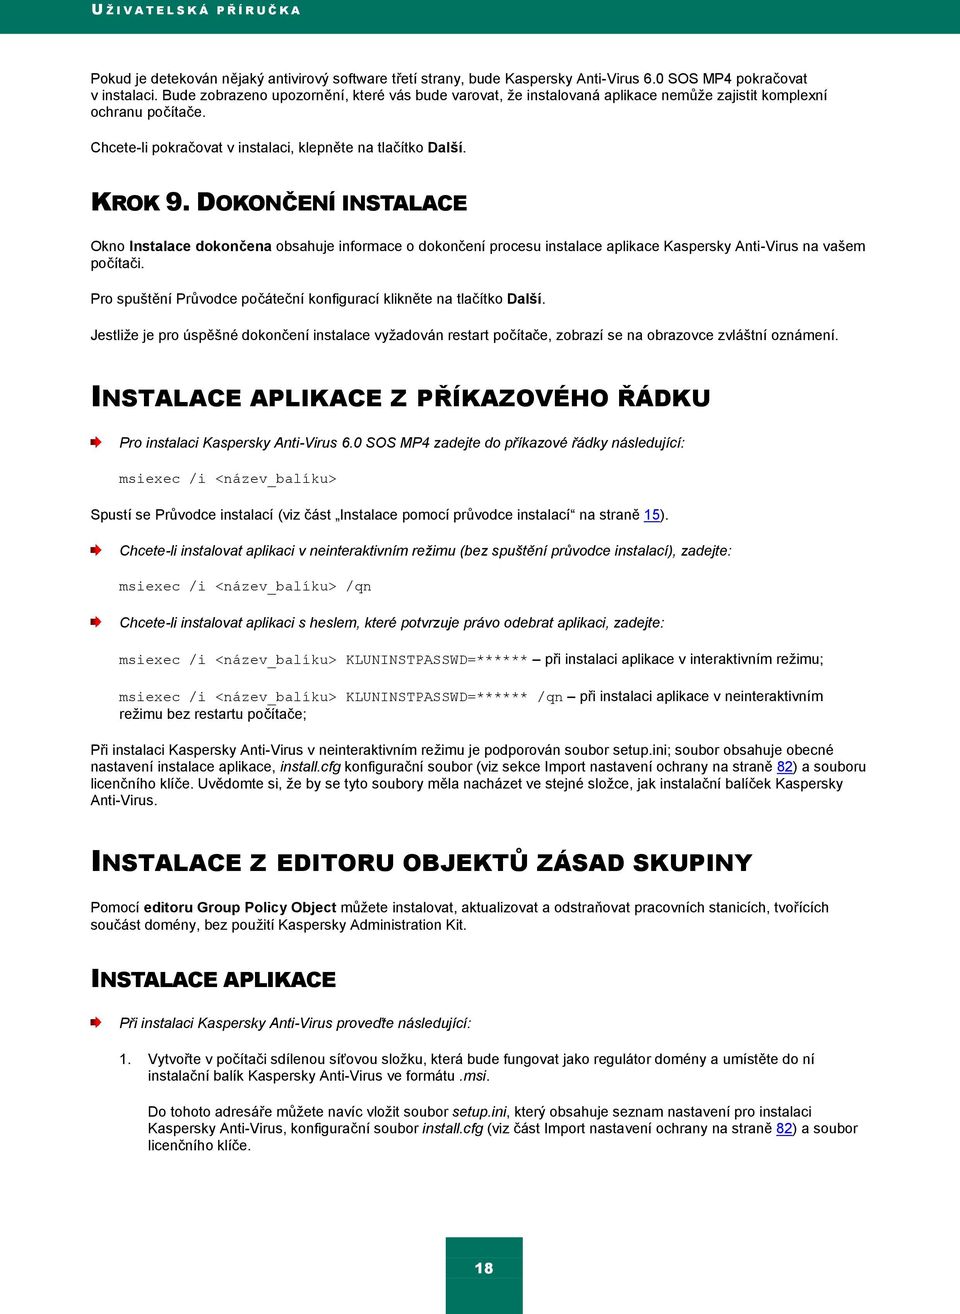 DOKONČENÍ INSTALACE Okno Instalace dokončena obsahuje informace o dokončení procesu instalace aplikace Kaspersky Anti-Virus na vašem počítači.